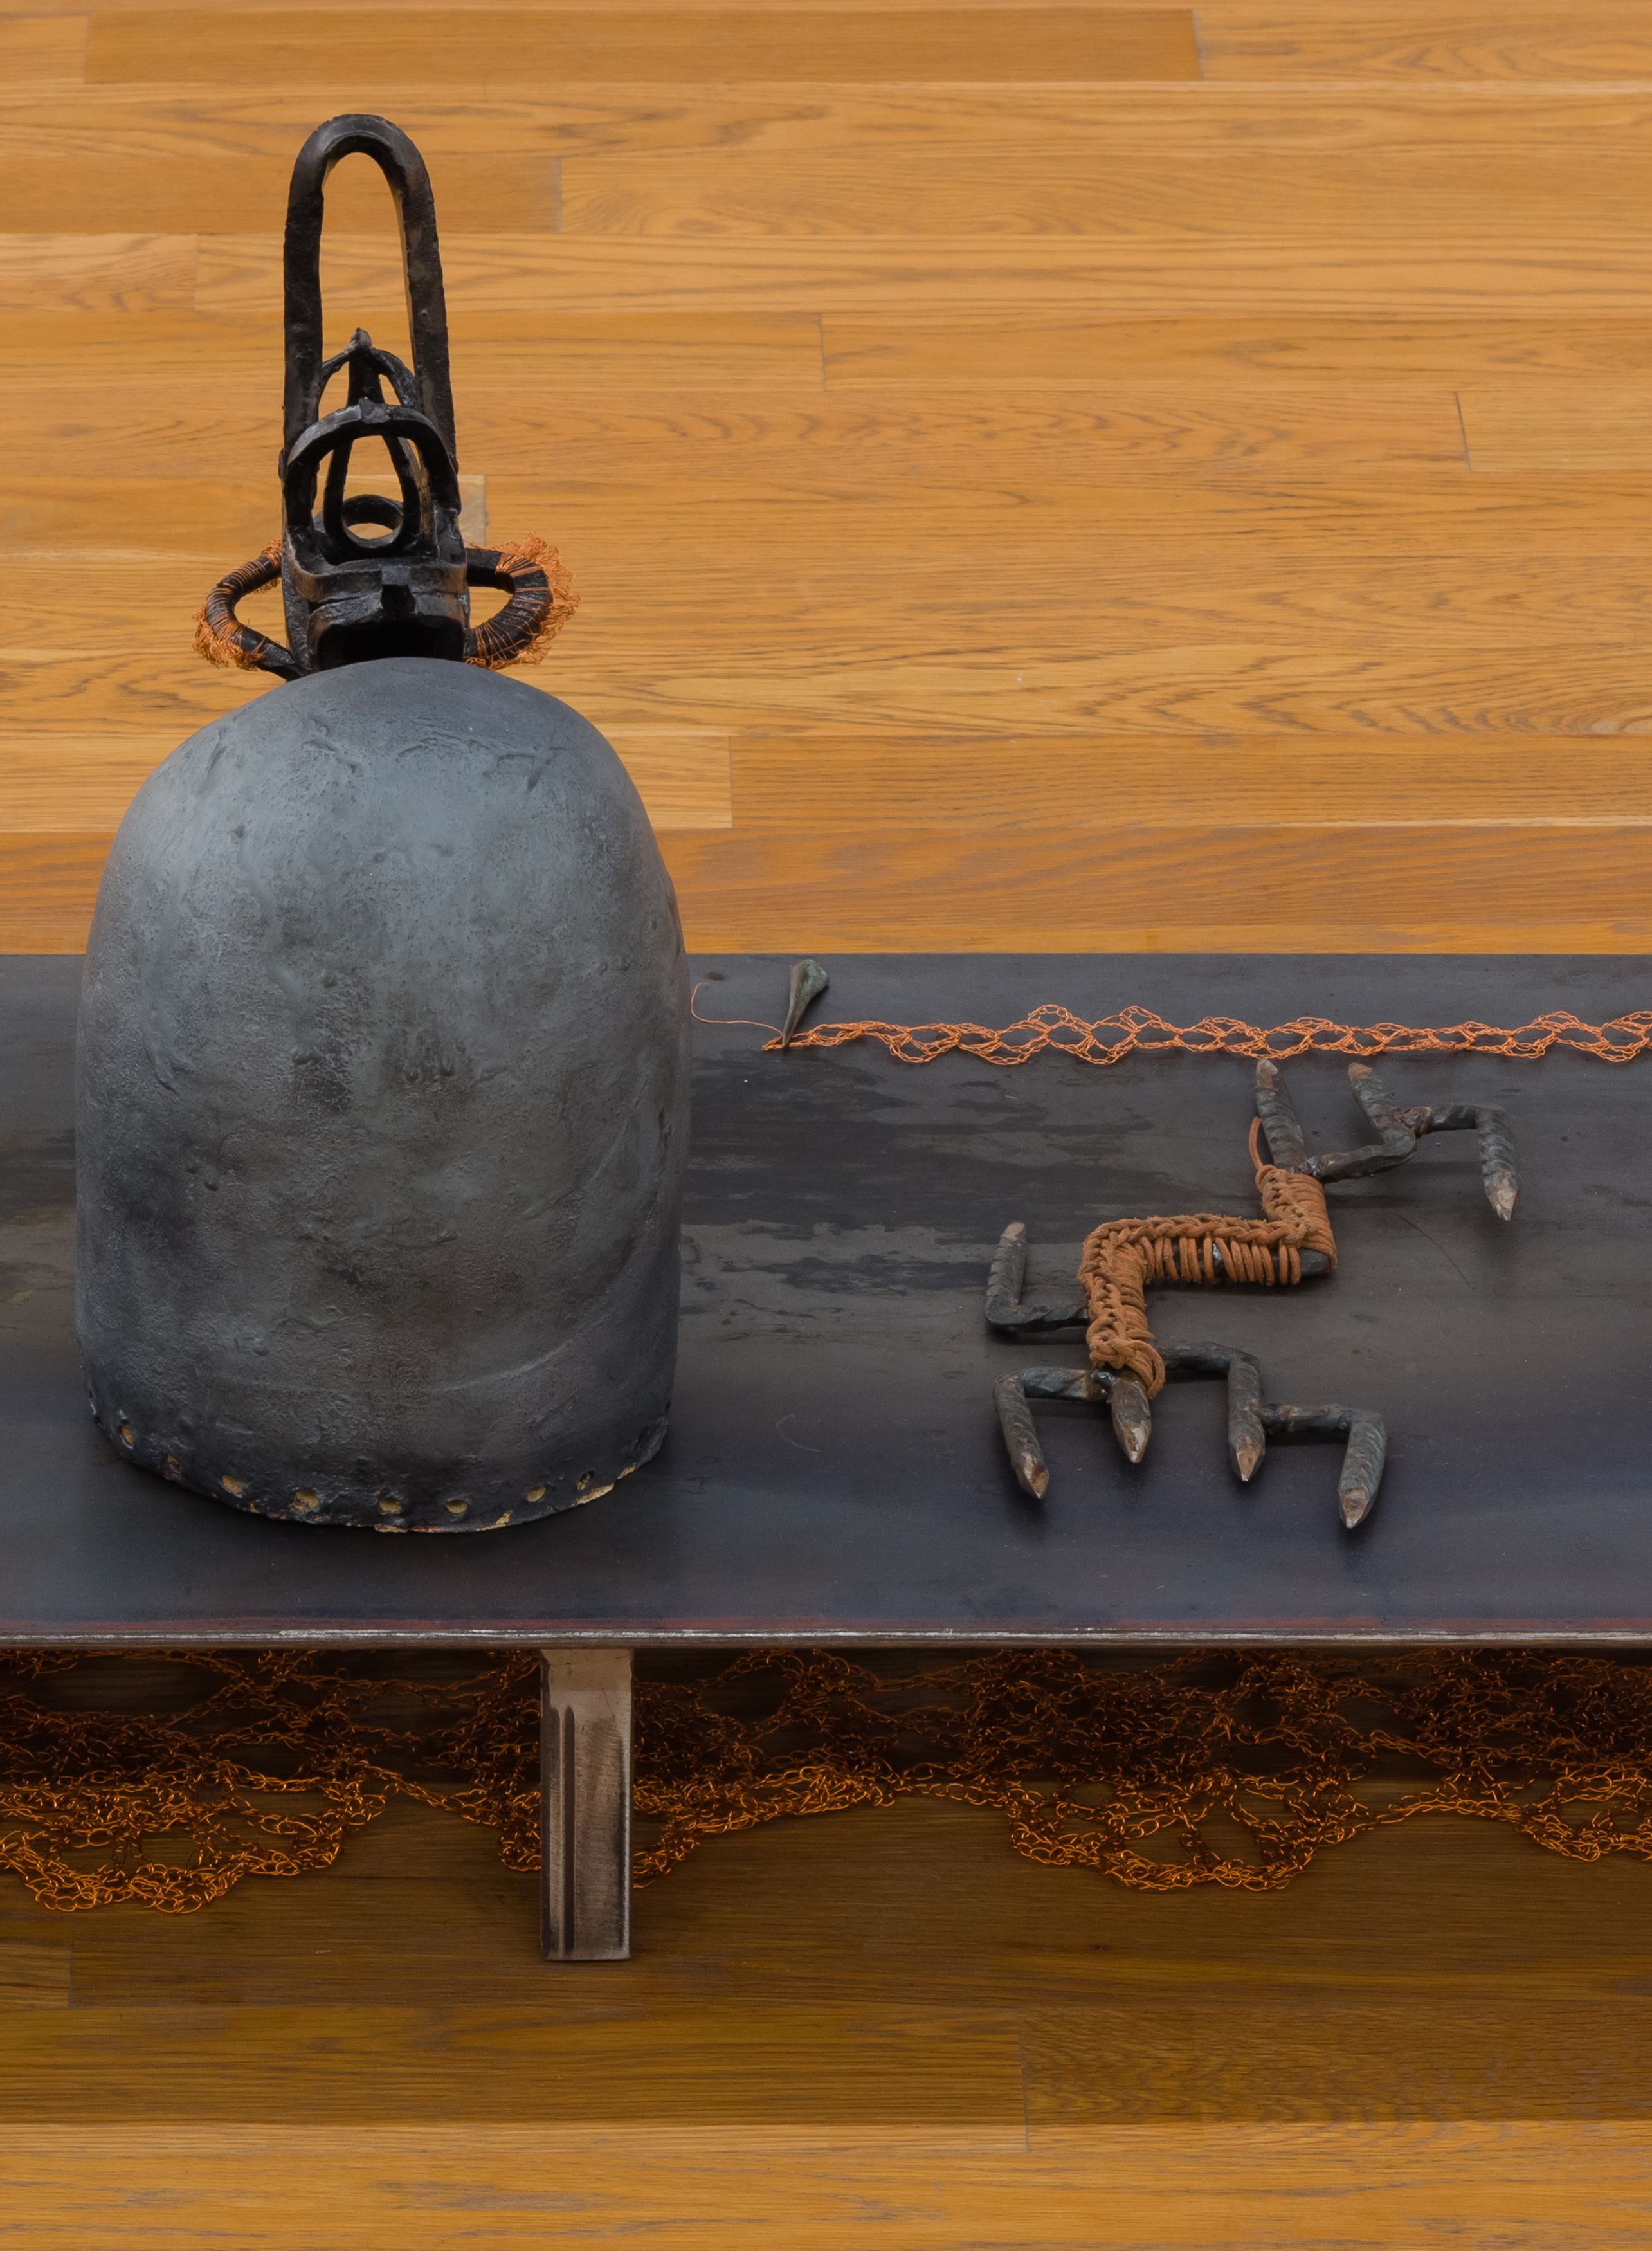 ektor garcia, mesa (detail), 2020, welded steel, crochet copper wire, glazed ceramic, and leather, 19 x 60 x 18 in. (48.26 x 152.4 x 45.72 cm)   